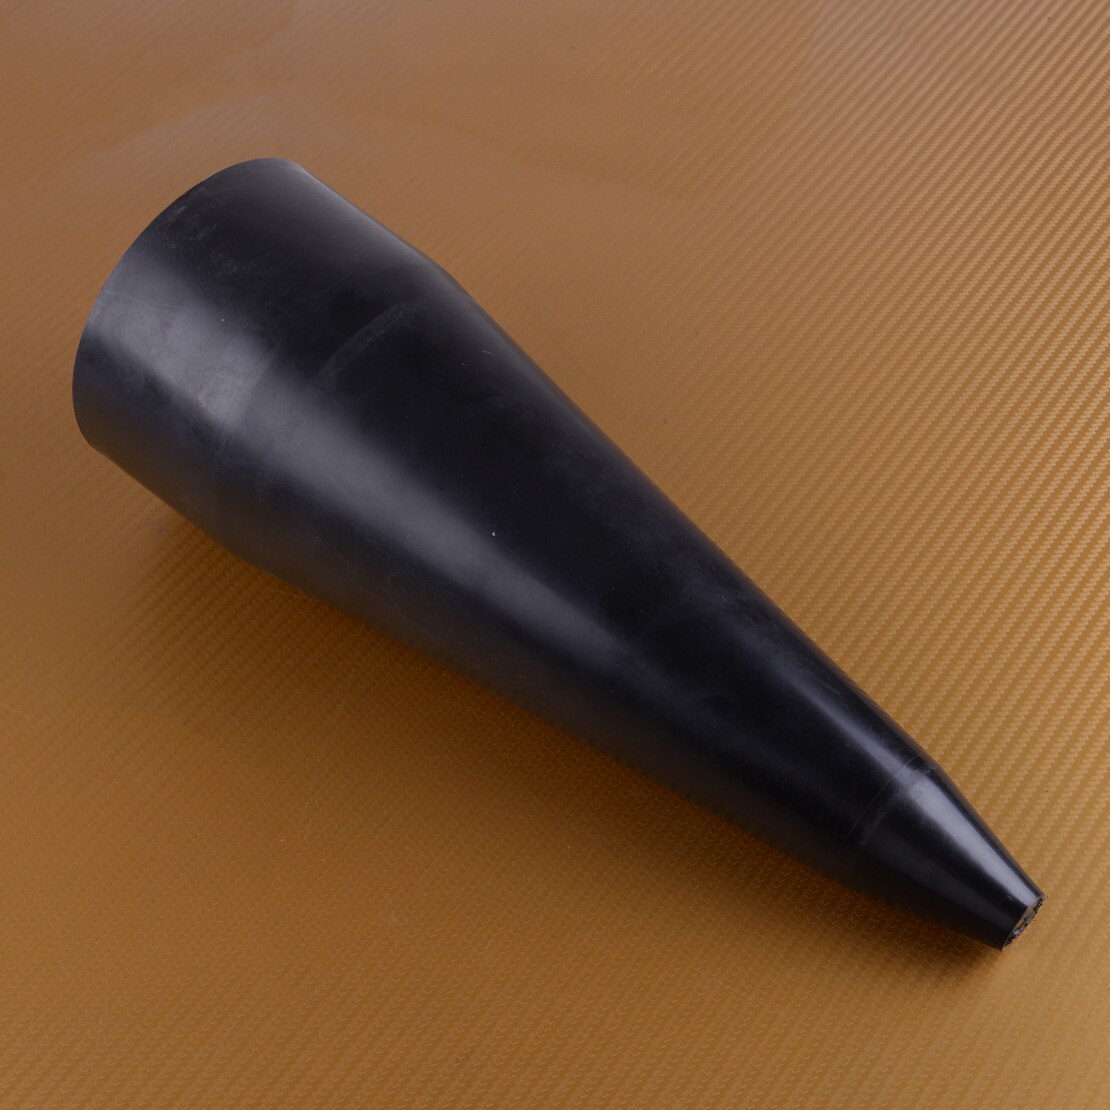 Citall sort plast stretch cv boot kegle værktøj til universal montering stretchy cv boot gamacher